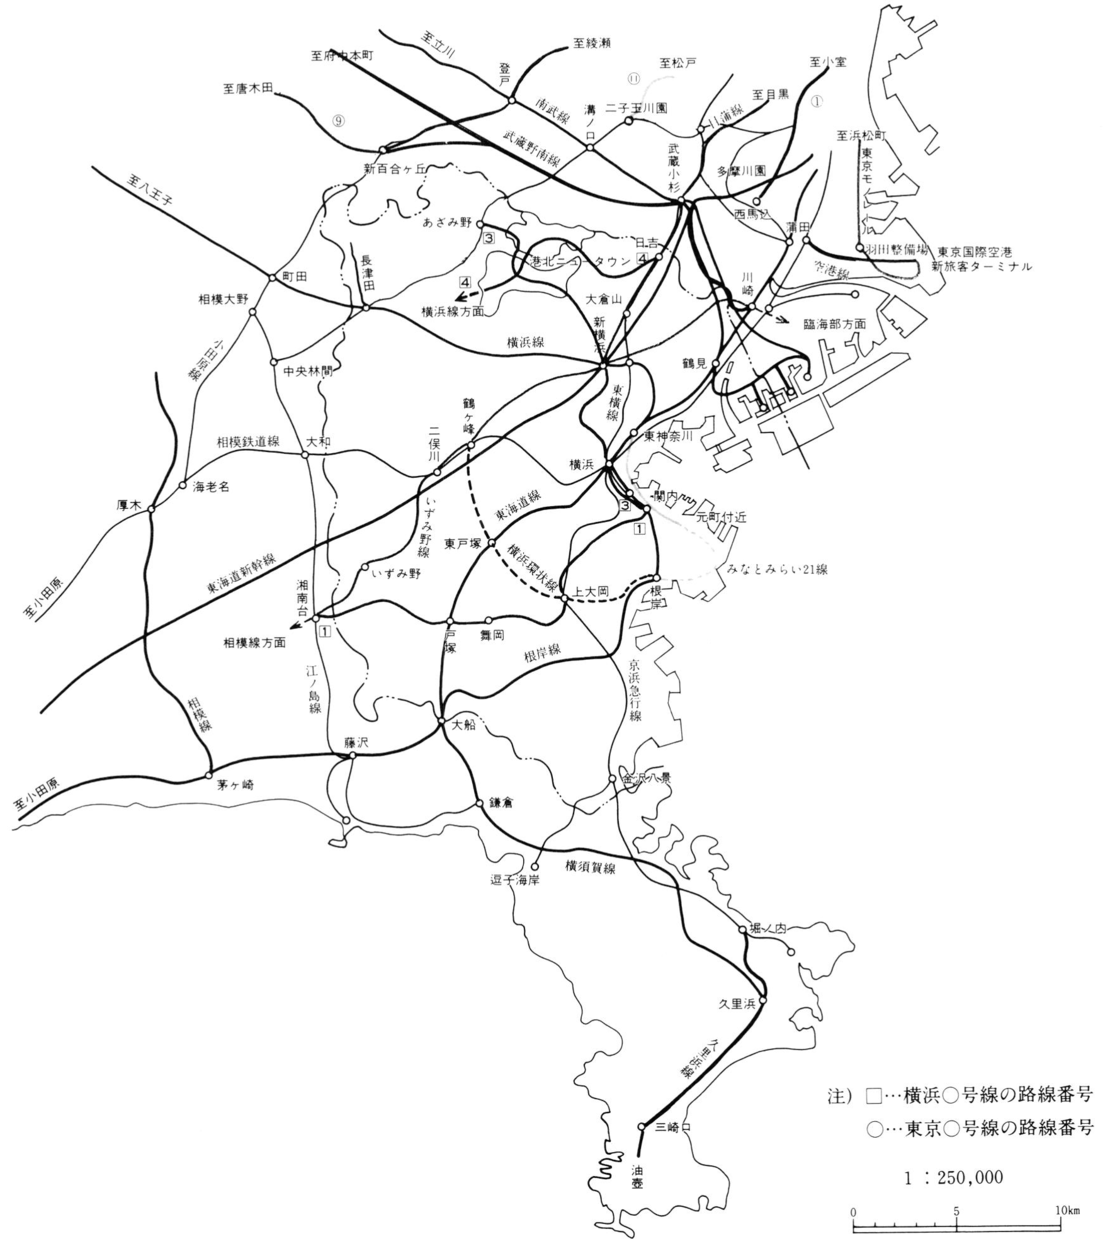 薄い実線（原図では黄色）が、運輸政策審議会答申第7号で計画されていた路線。